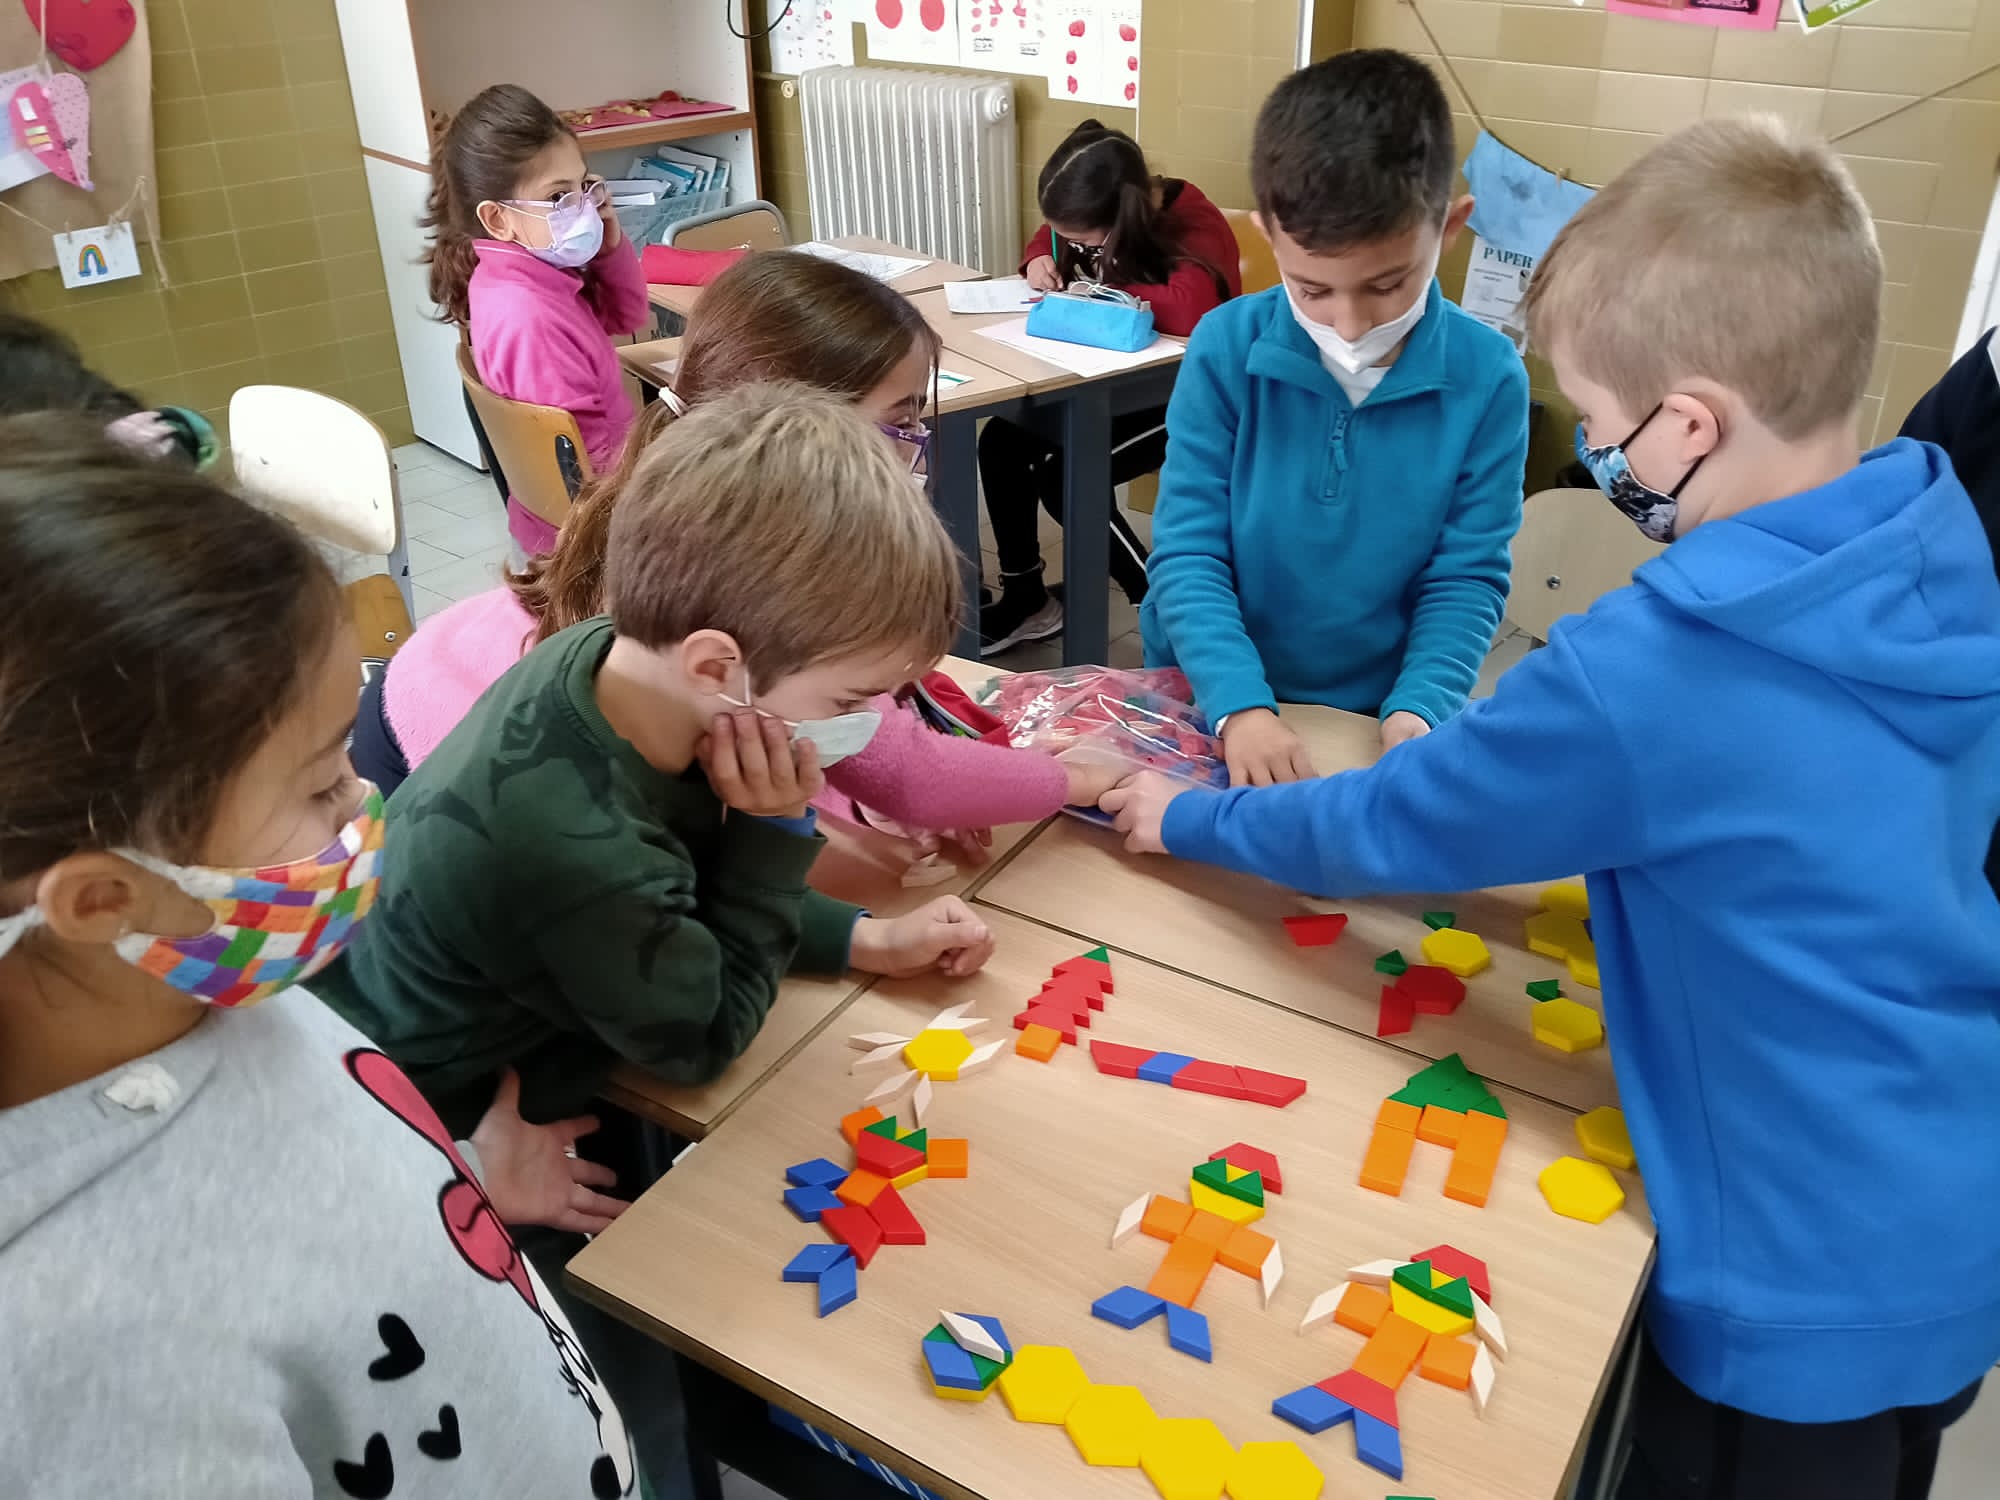 Nens i nenes manipulant materials per aprendre matemàtiques